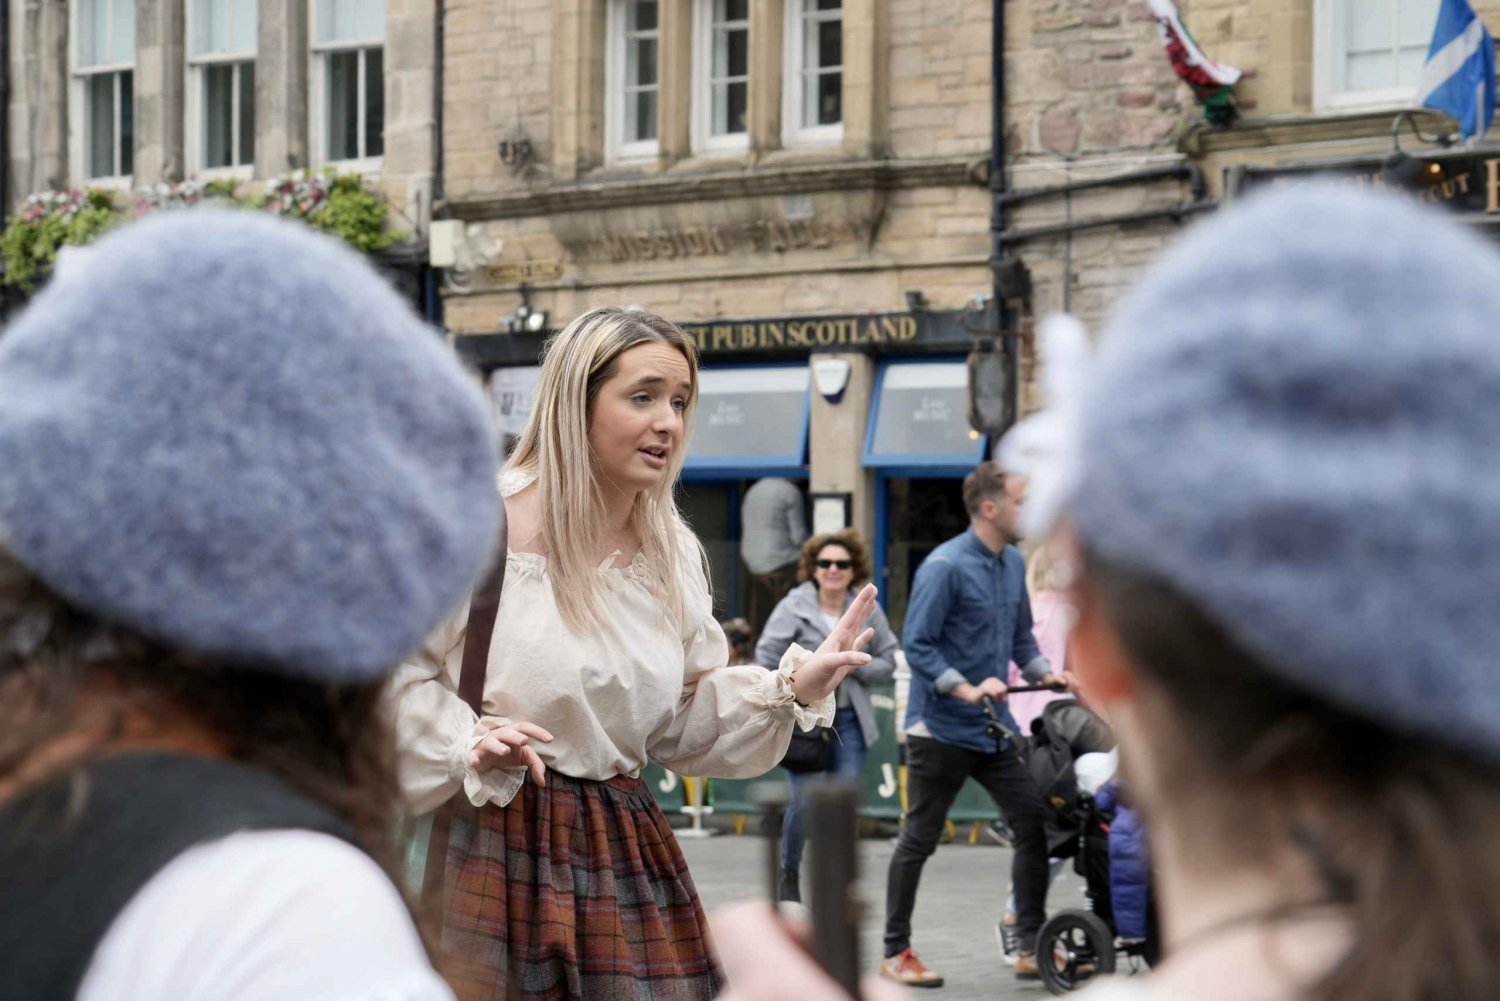 La Belle Rebelle - Edinburgh's women's history Private Tour